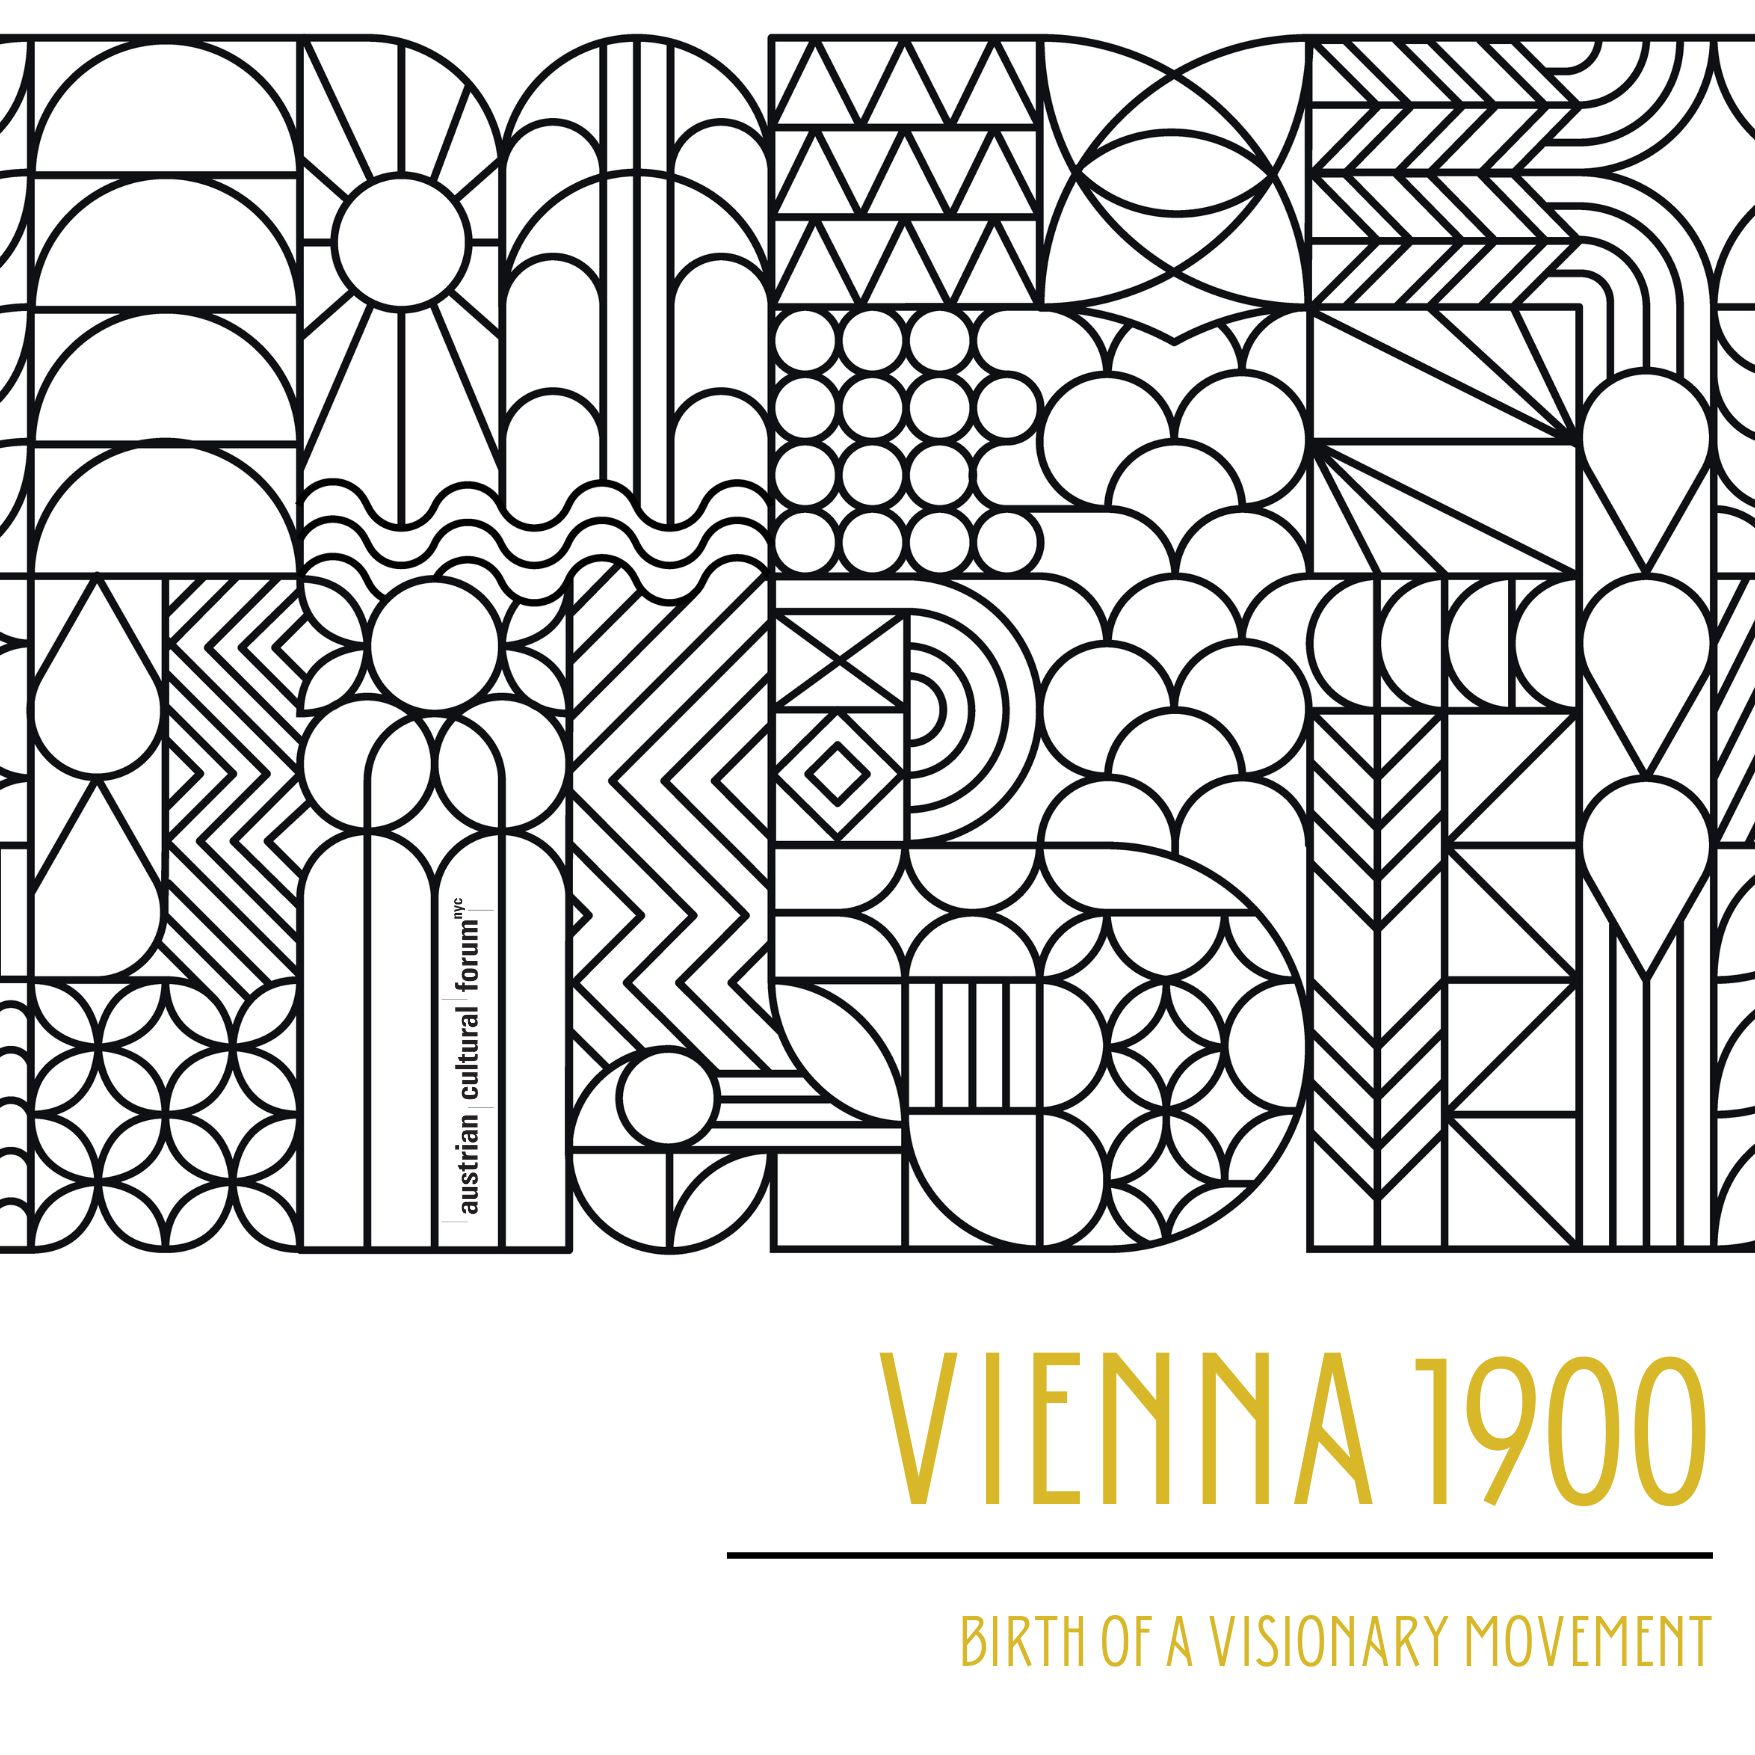 Conferencia de dos días: Viena 1900. Nacimiento de un movimiento visionario